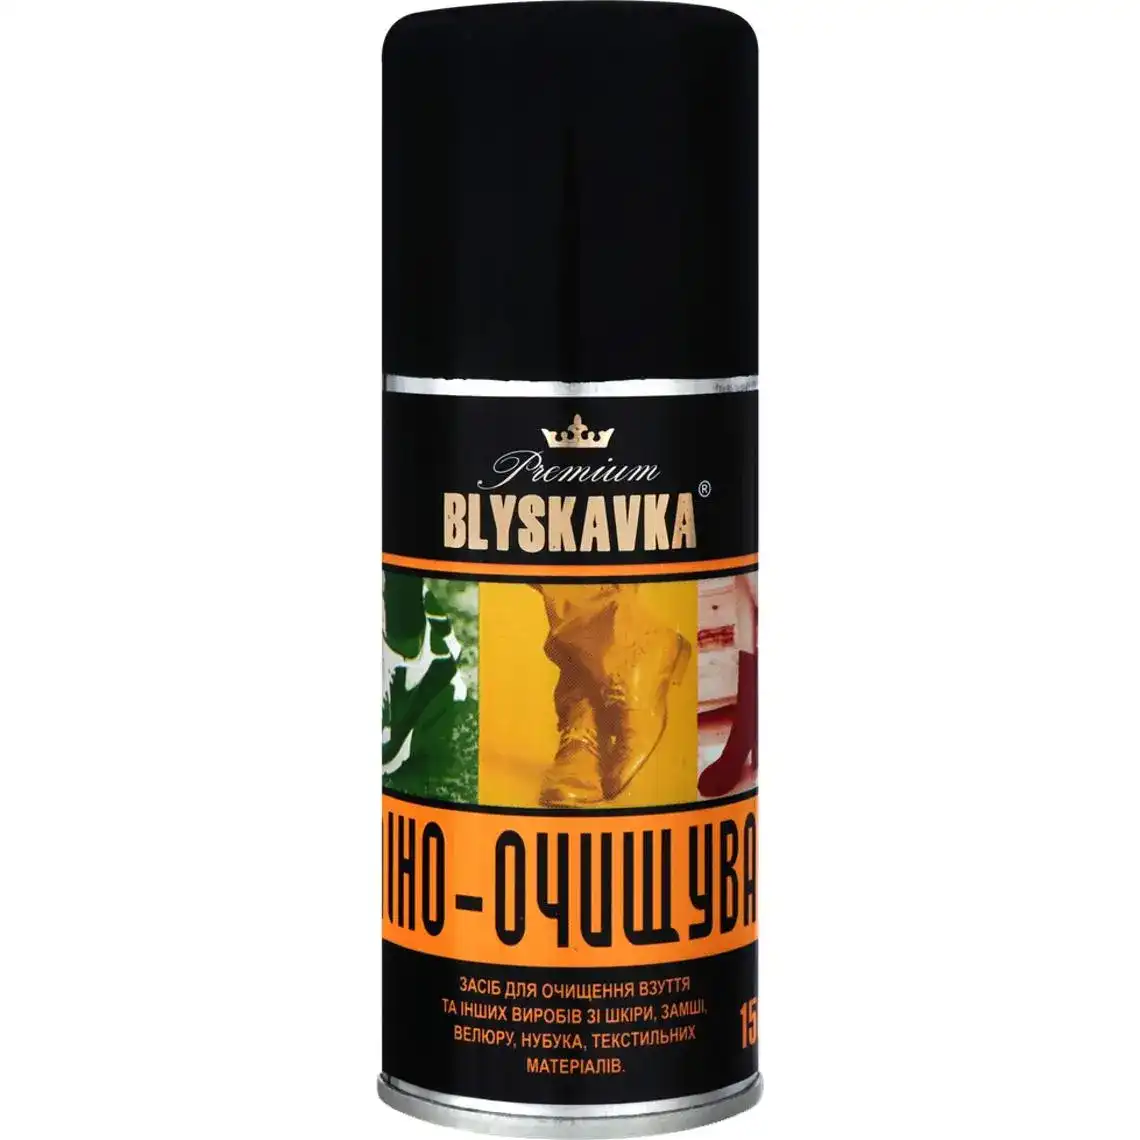 Піна-очищувач Blyskavka Premium для виробів зі шкіри, замші, велюру і нубука 150 мл